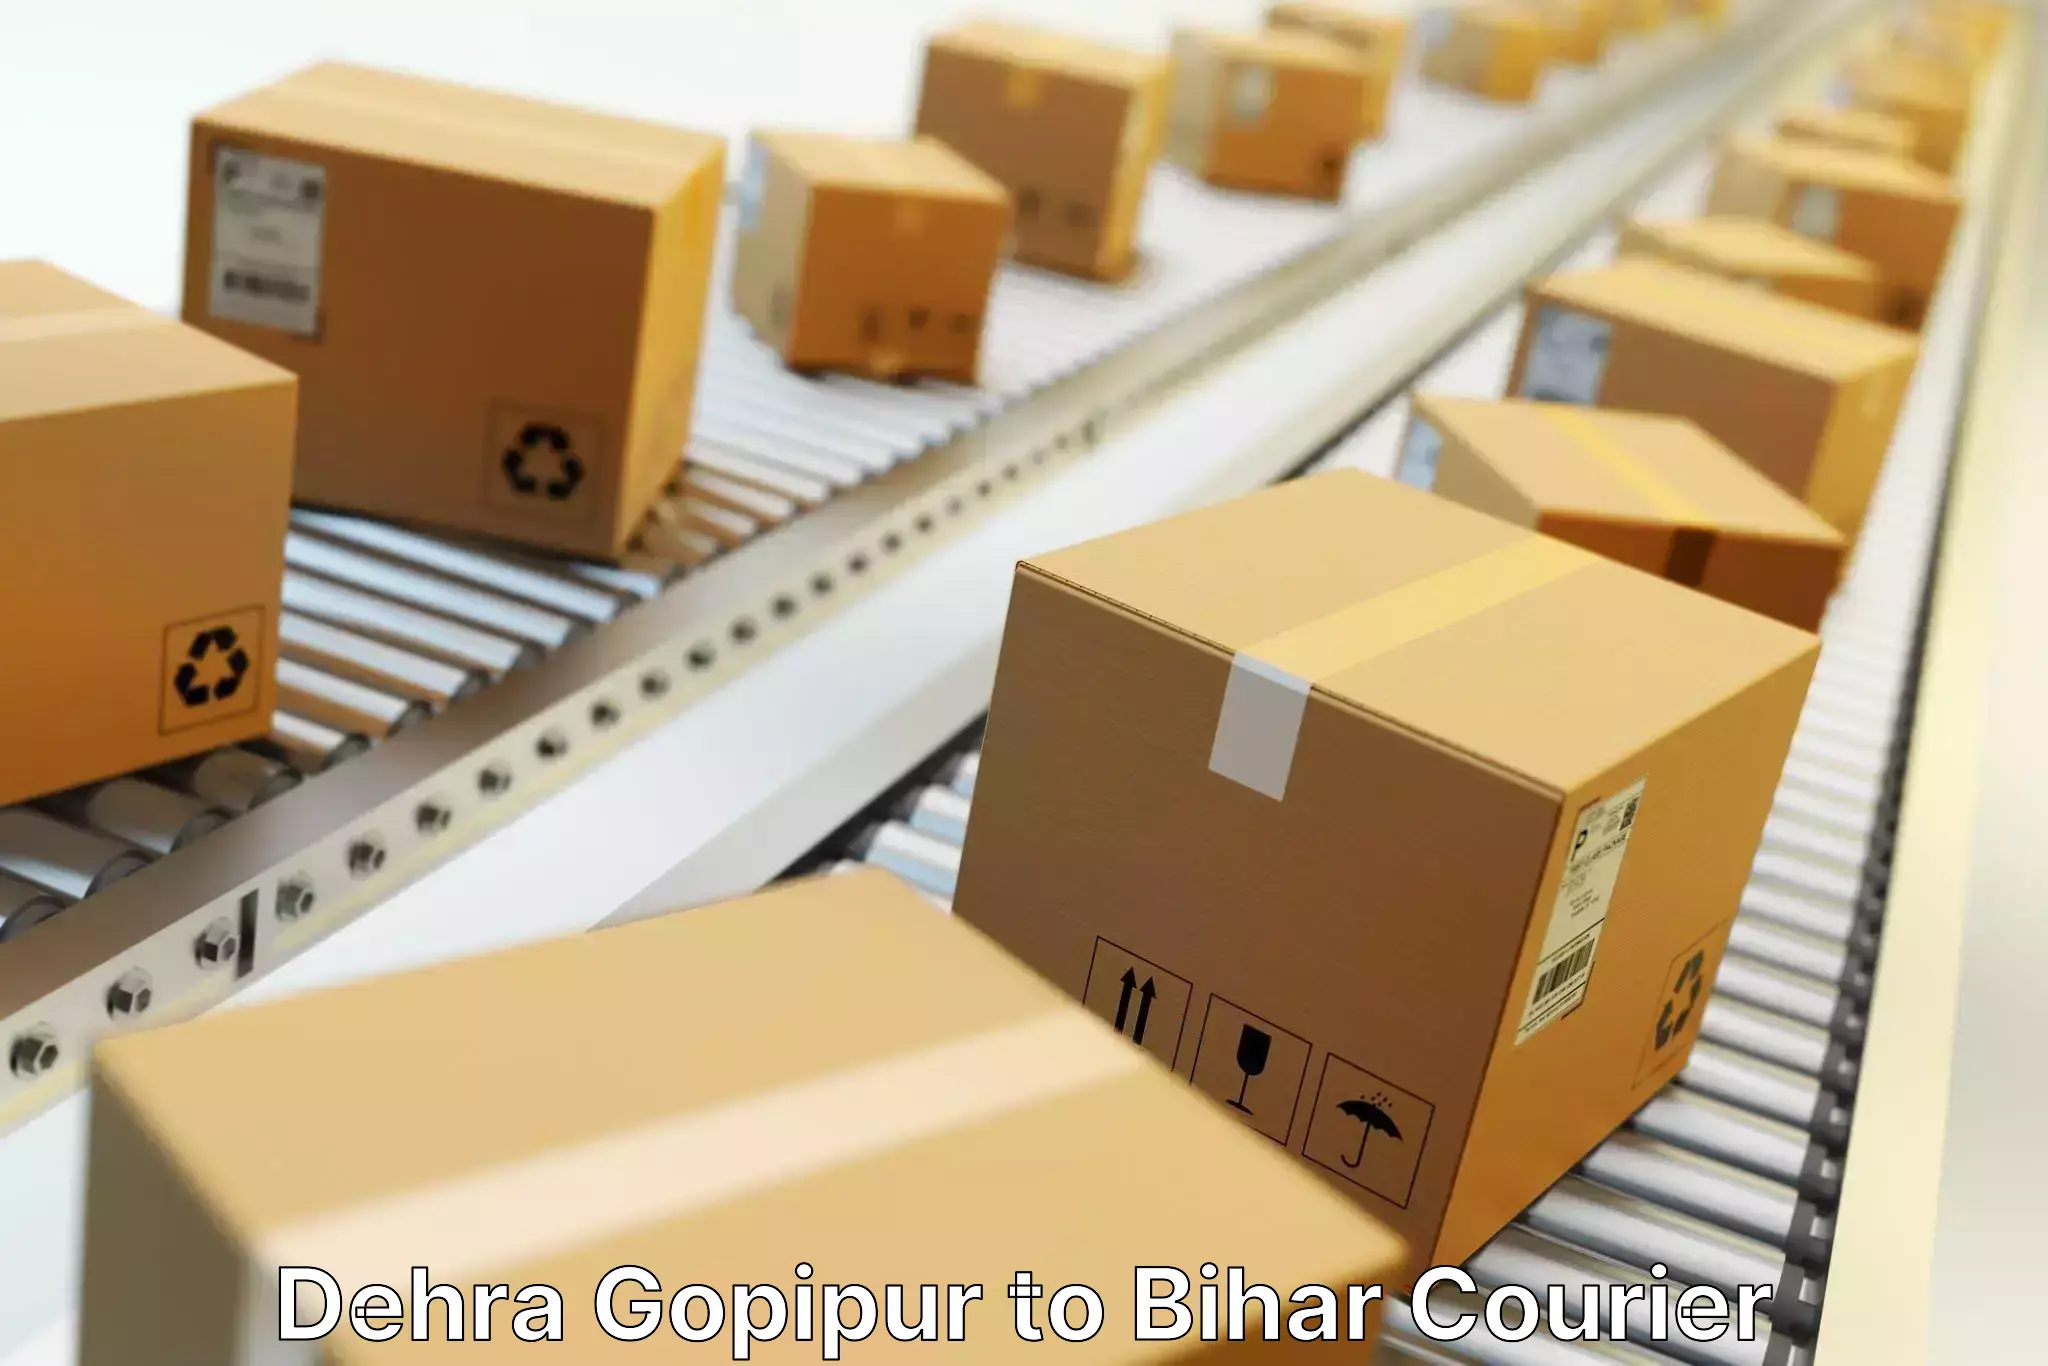 Versatile courier offerings Dehra Gopipur to Bihar